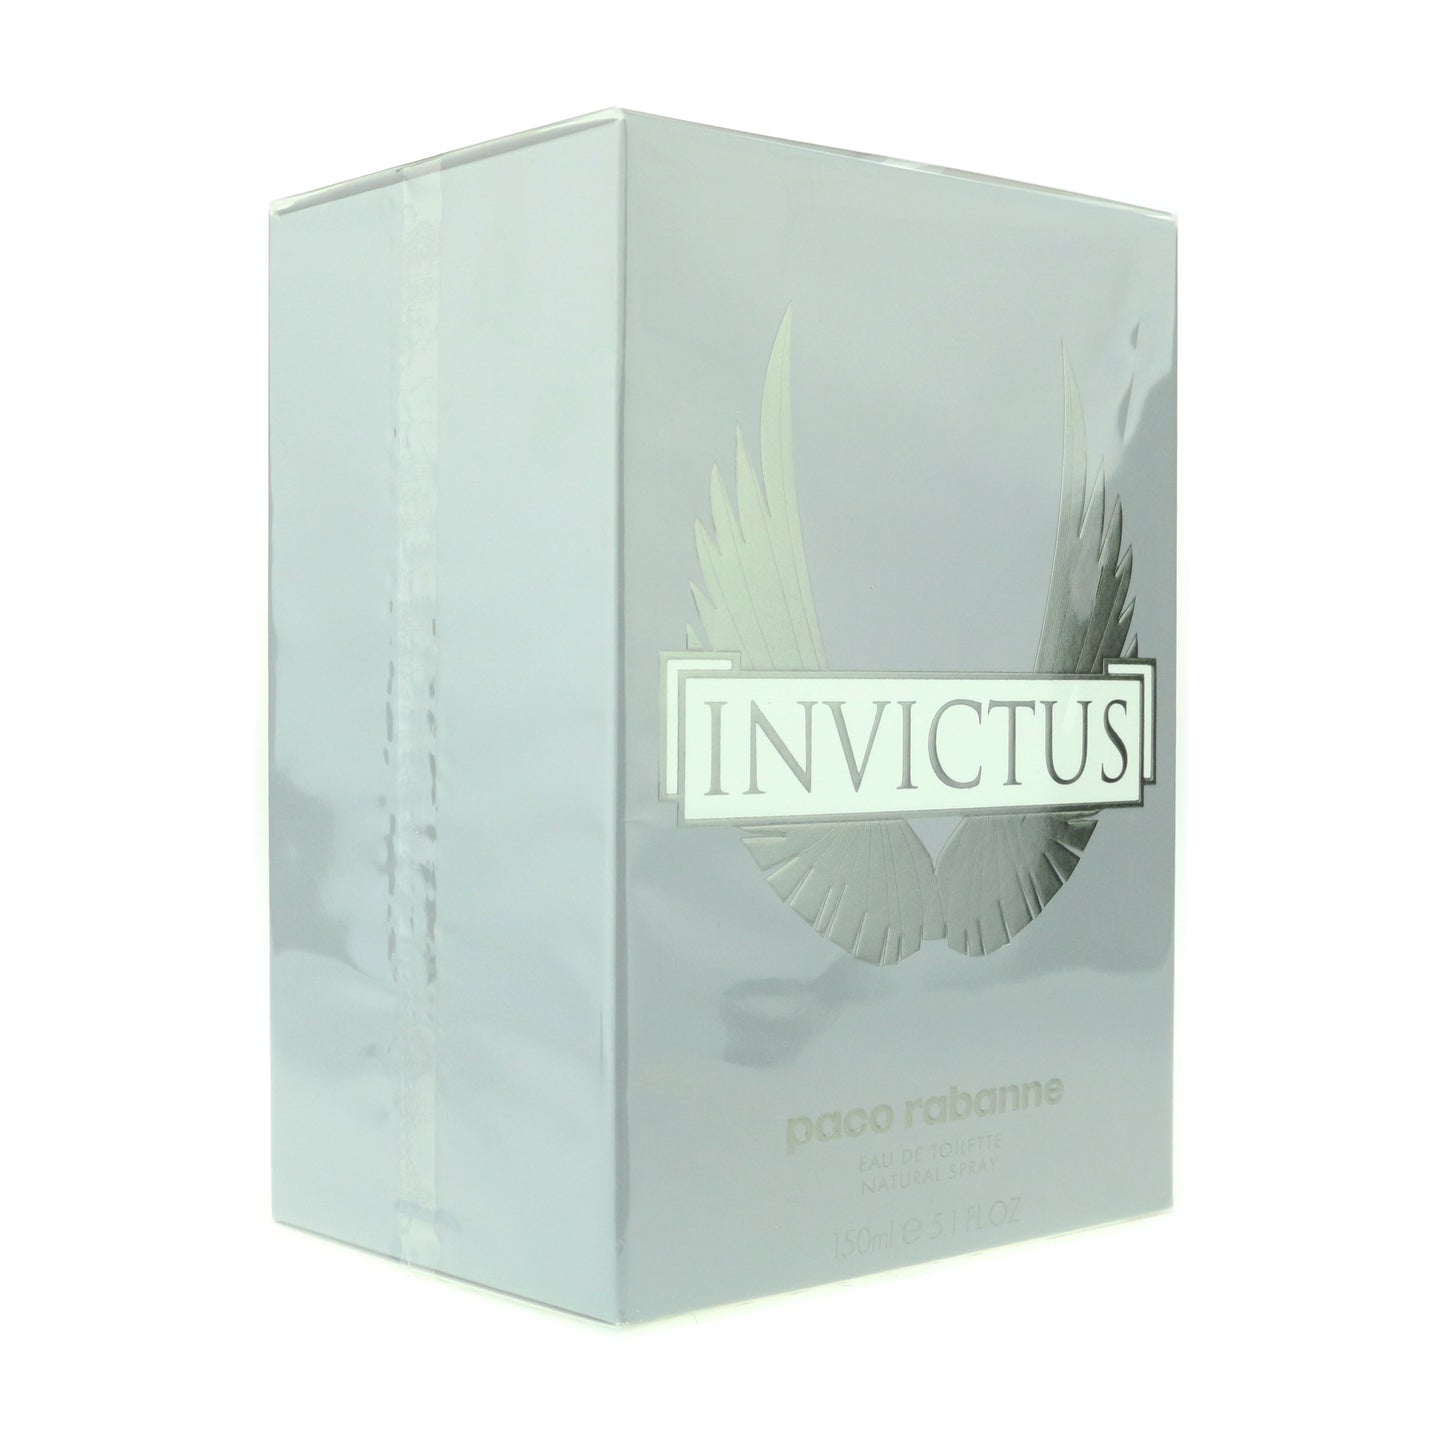 Paco Rabanne 'Invictus' Eau De Toilette 5.1oz/150ml New In Box